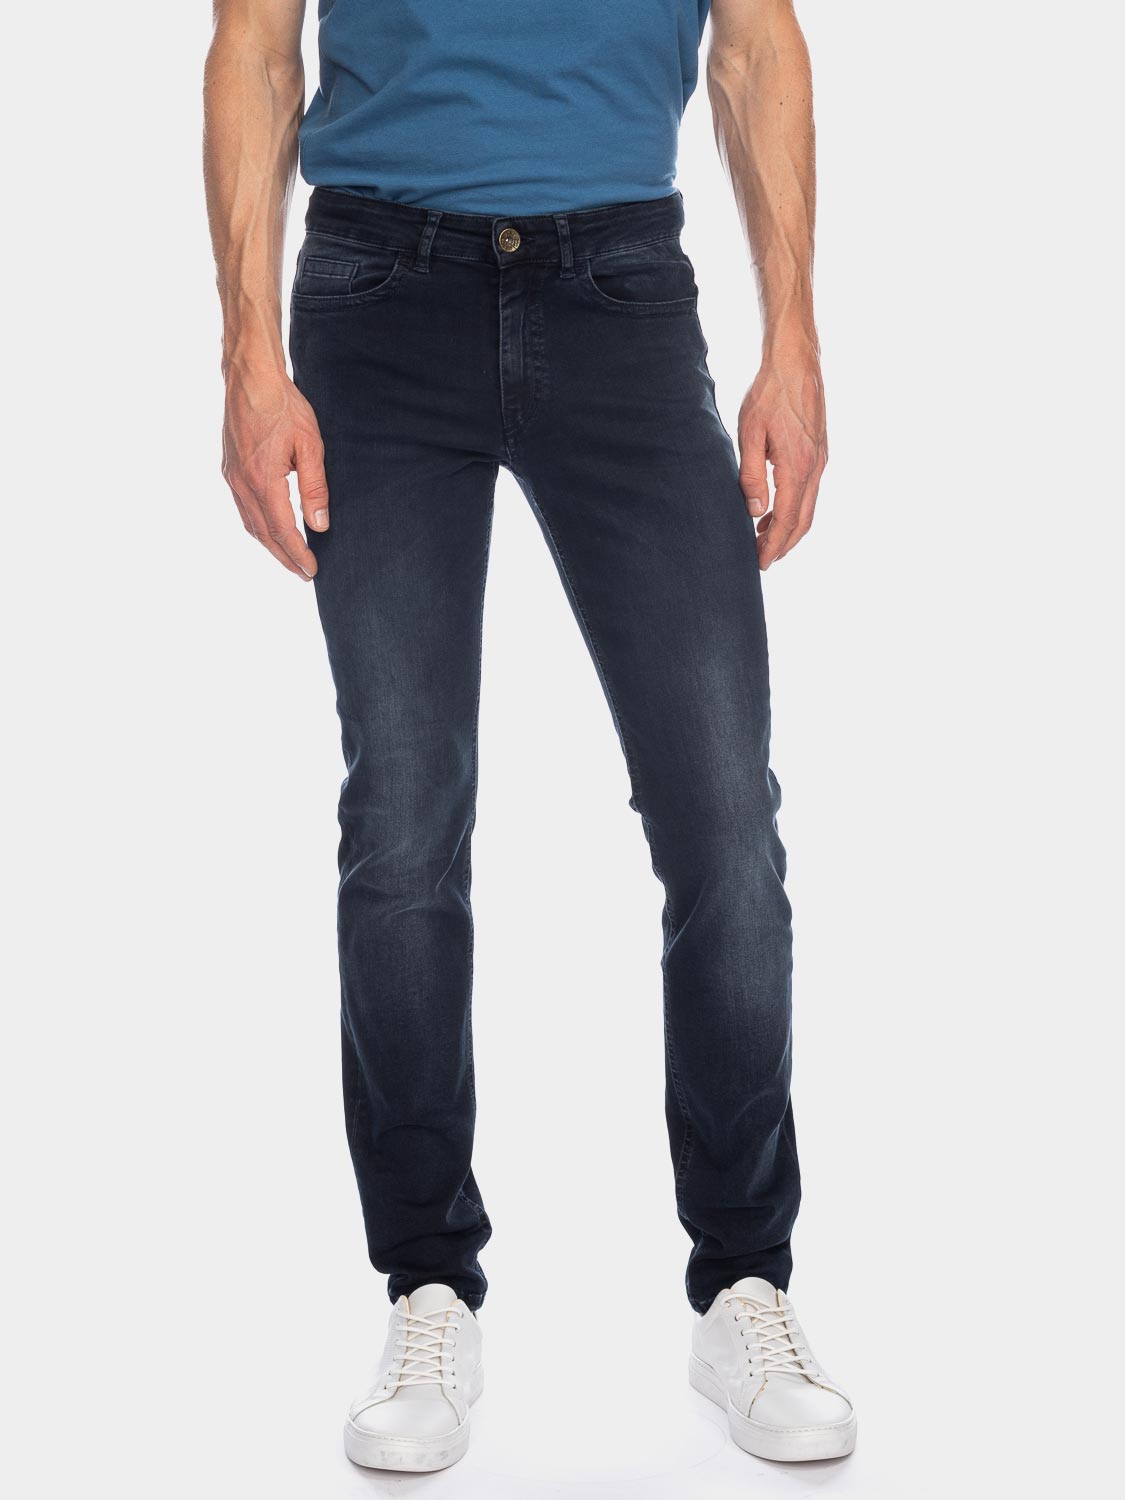 Jeans Skinny Jimmy 47028 NBL USD